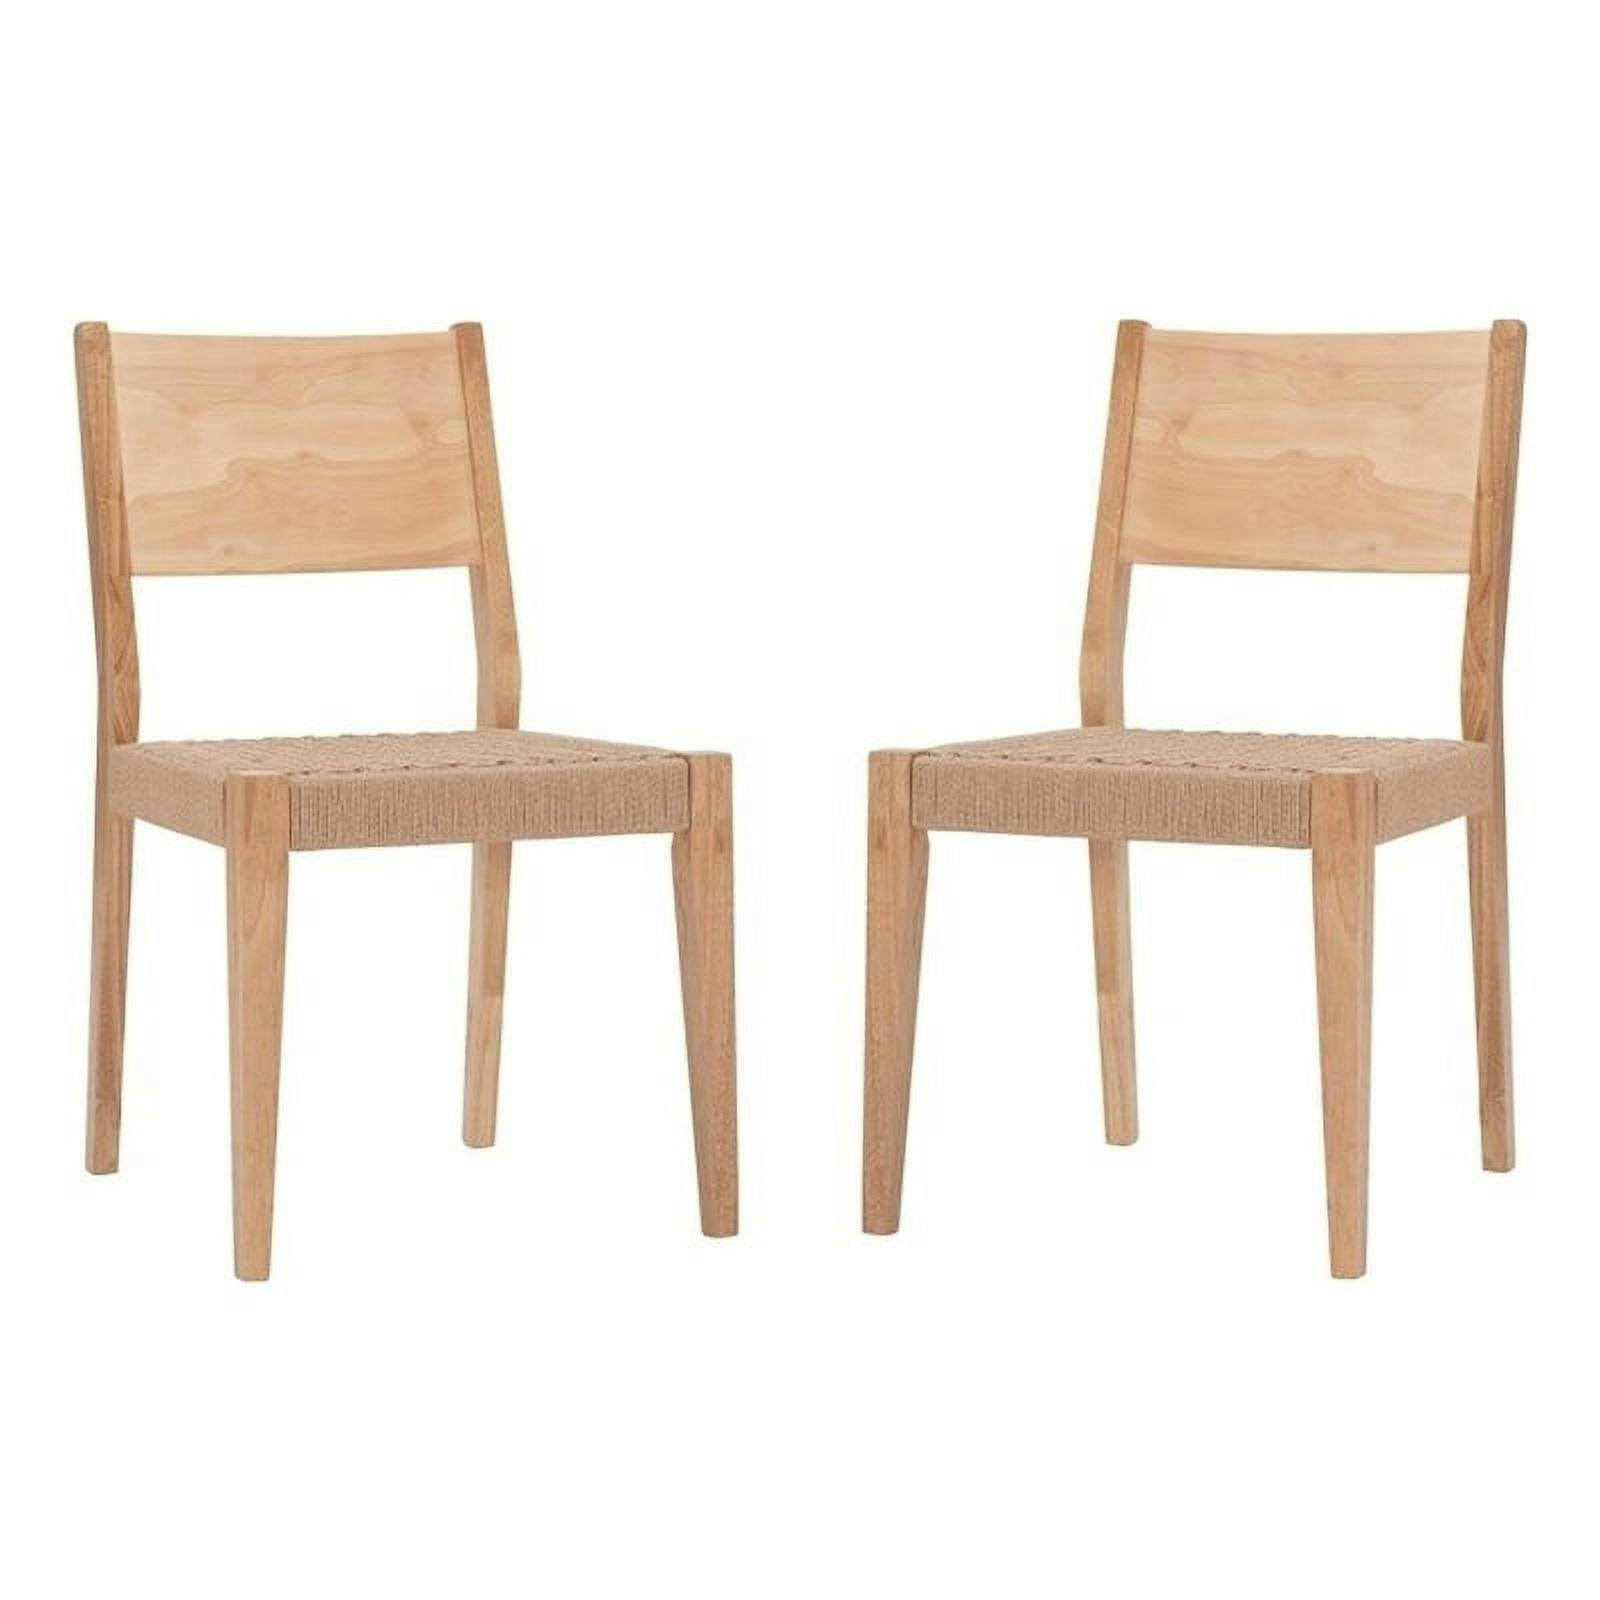 Midcentury Natural Brown Basketweave Rope & Wood Dining Chair Set